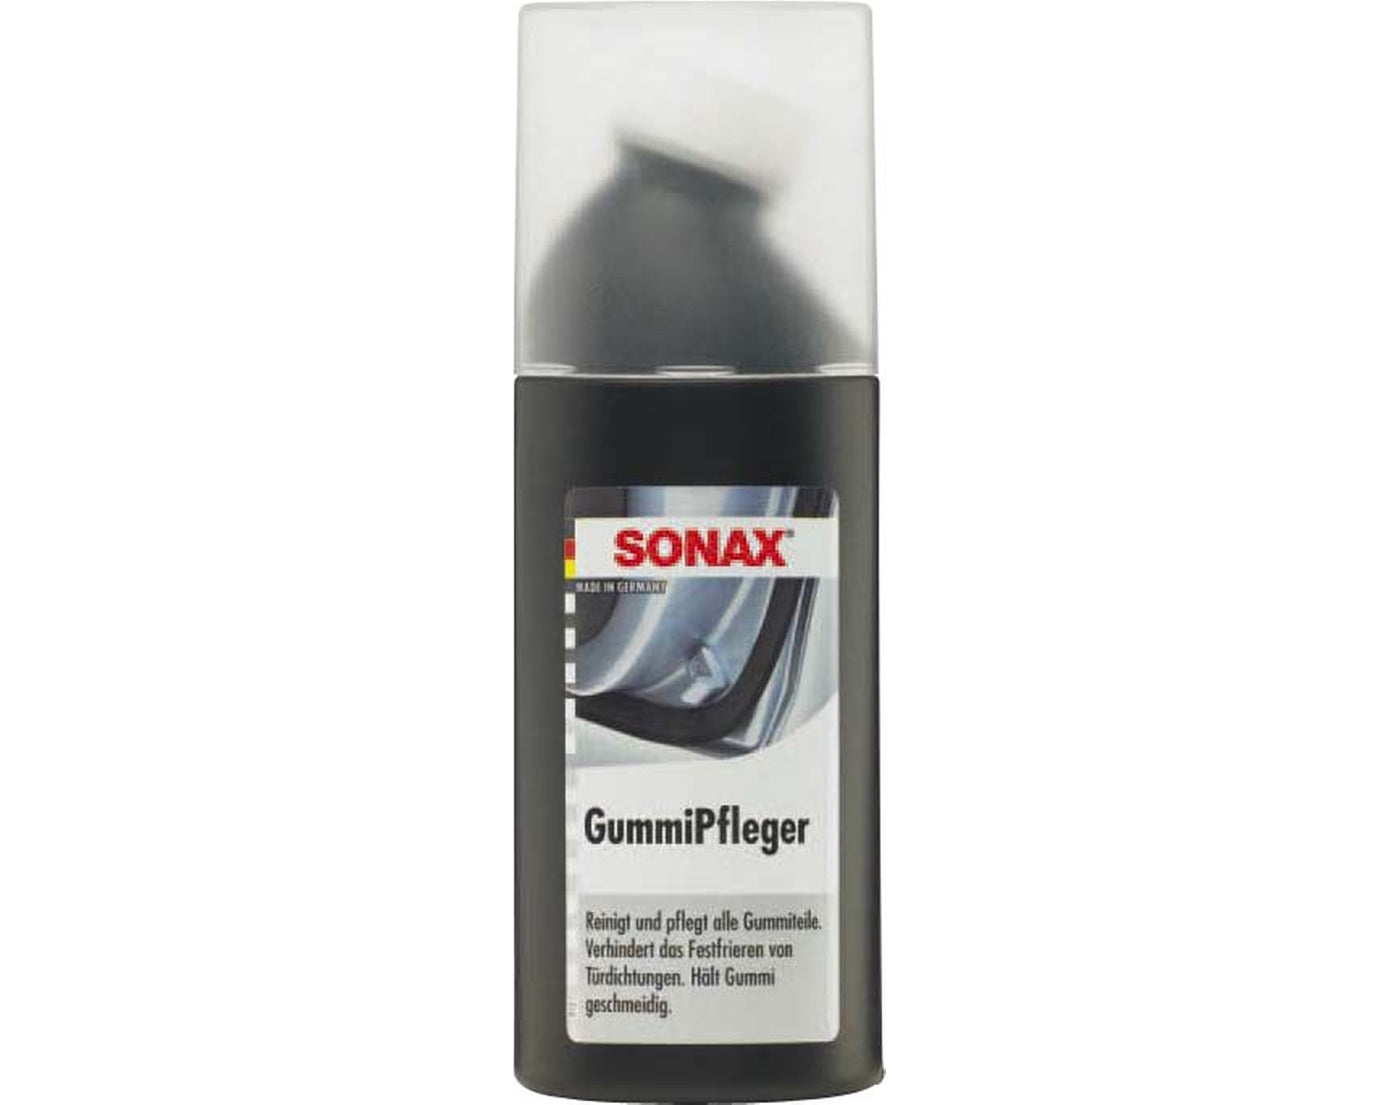 SONAX - Gummipfleger 100 ml - Garage/Velos-Motos Allemann